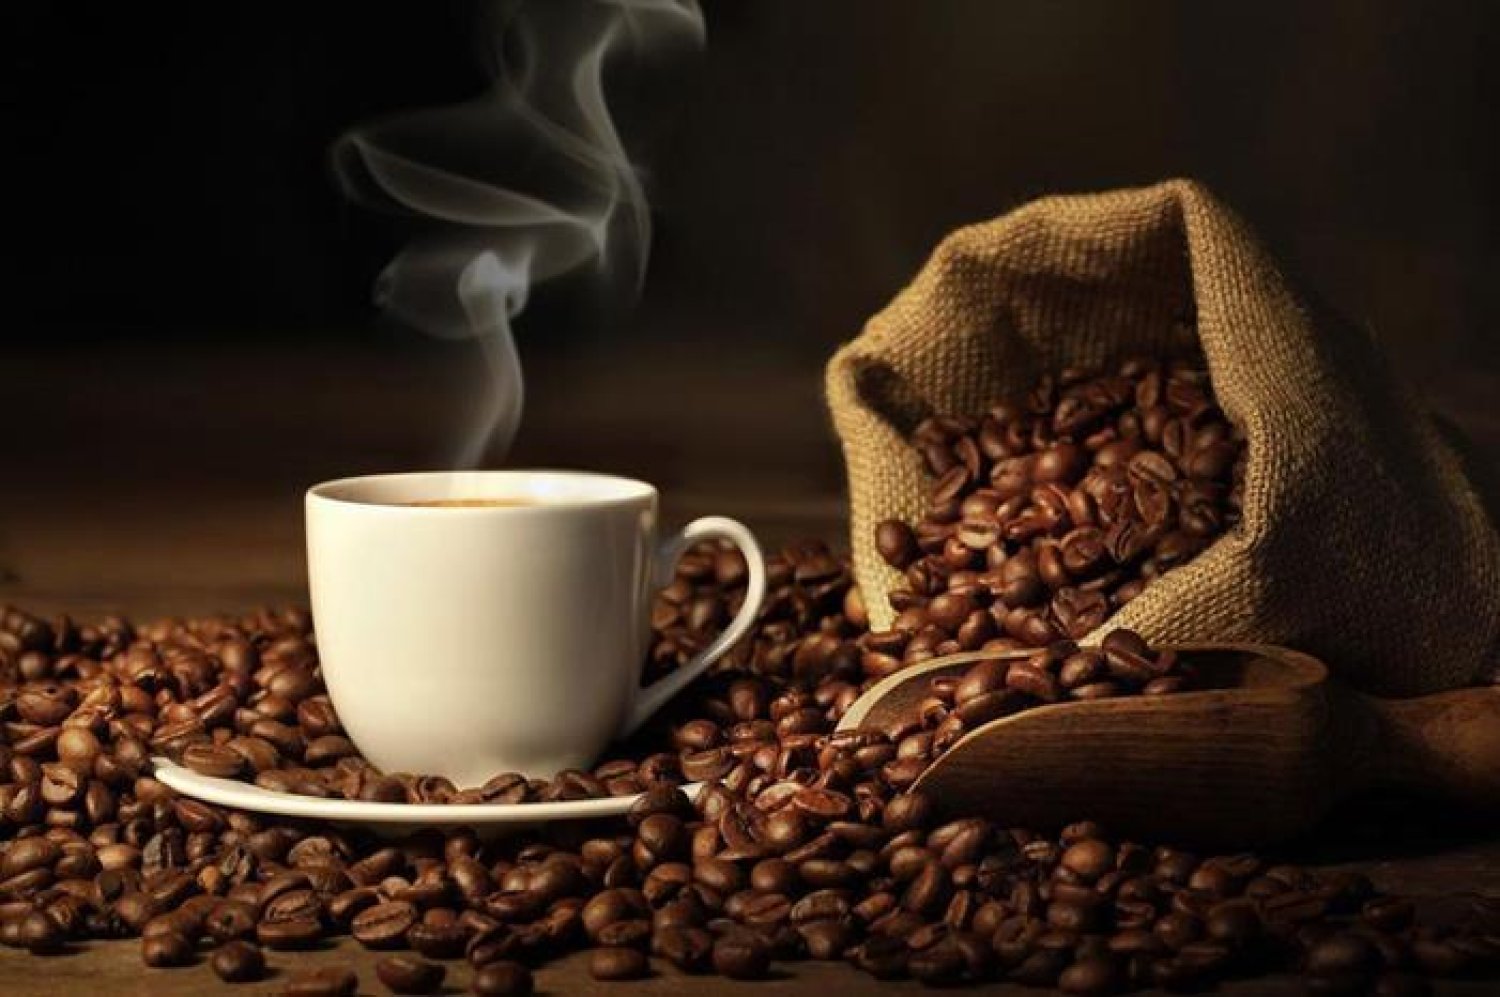 حيلة لمواجهة آثار الأرق المرتبطة بشرب القهوة